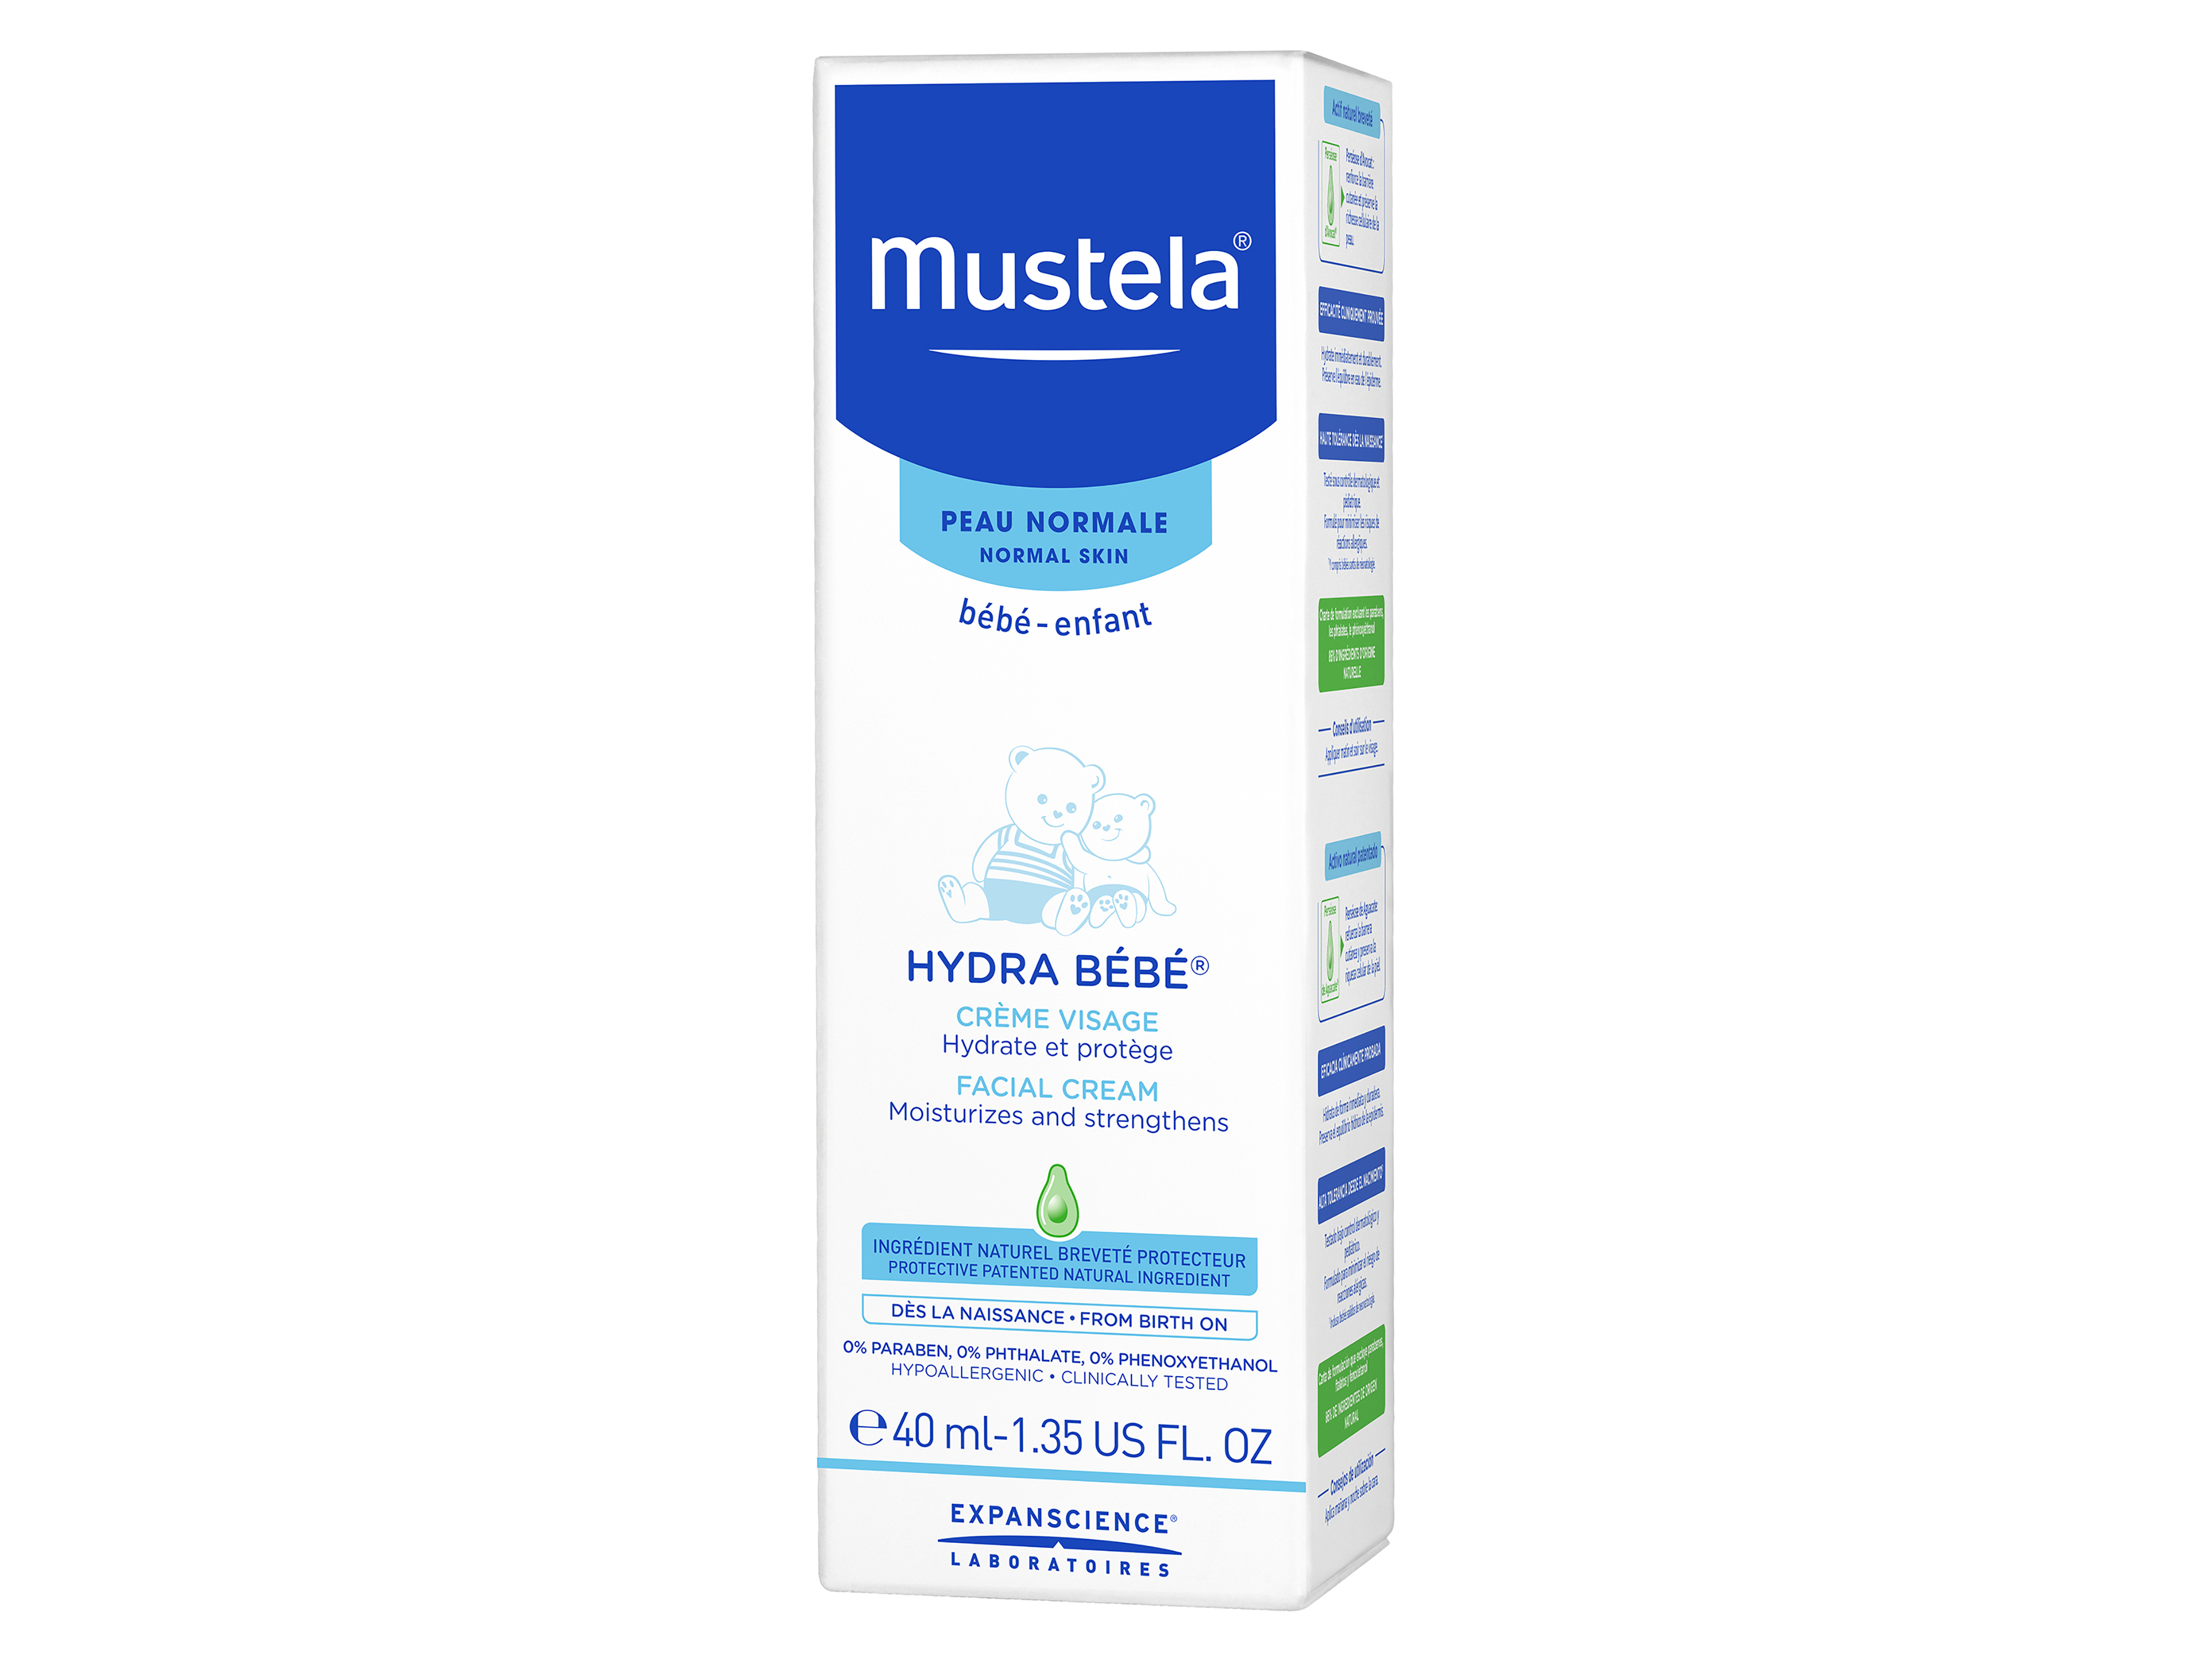 Mustela Hydra Bebe Facial Cream, 40 ml